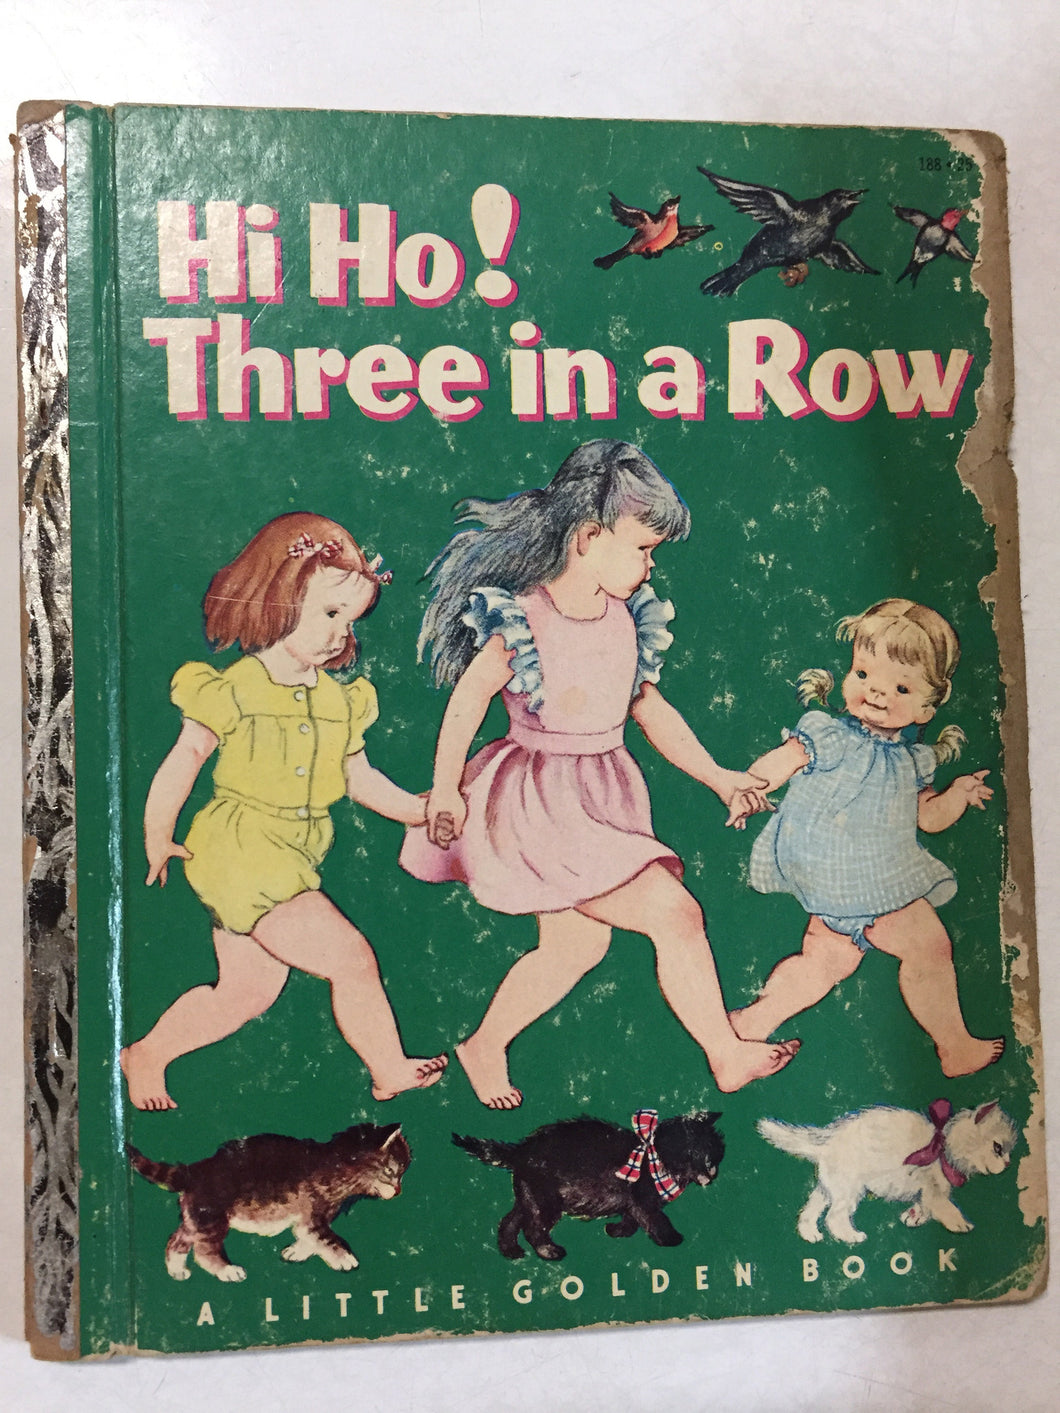 Hi Ho! Three in a Row - Slickcatbooks